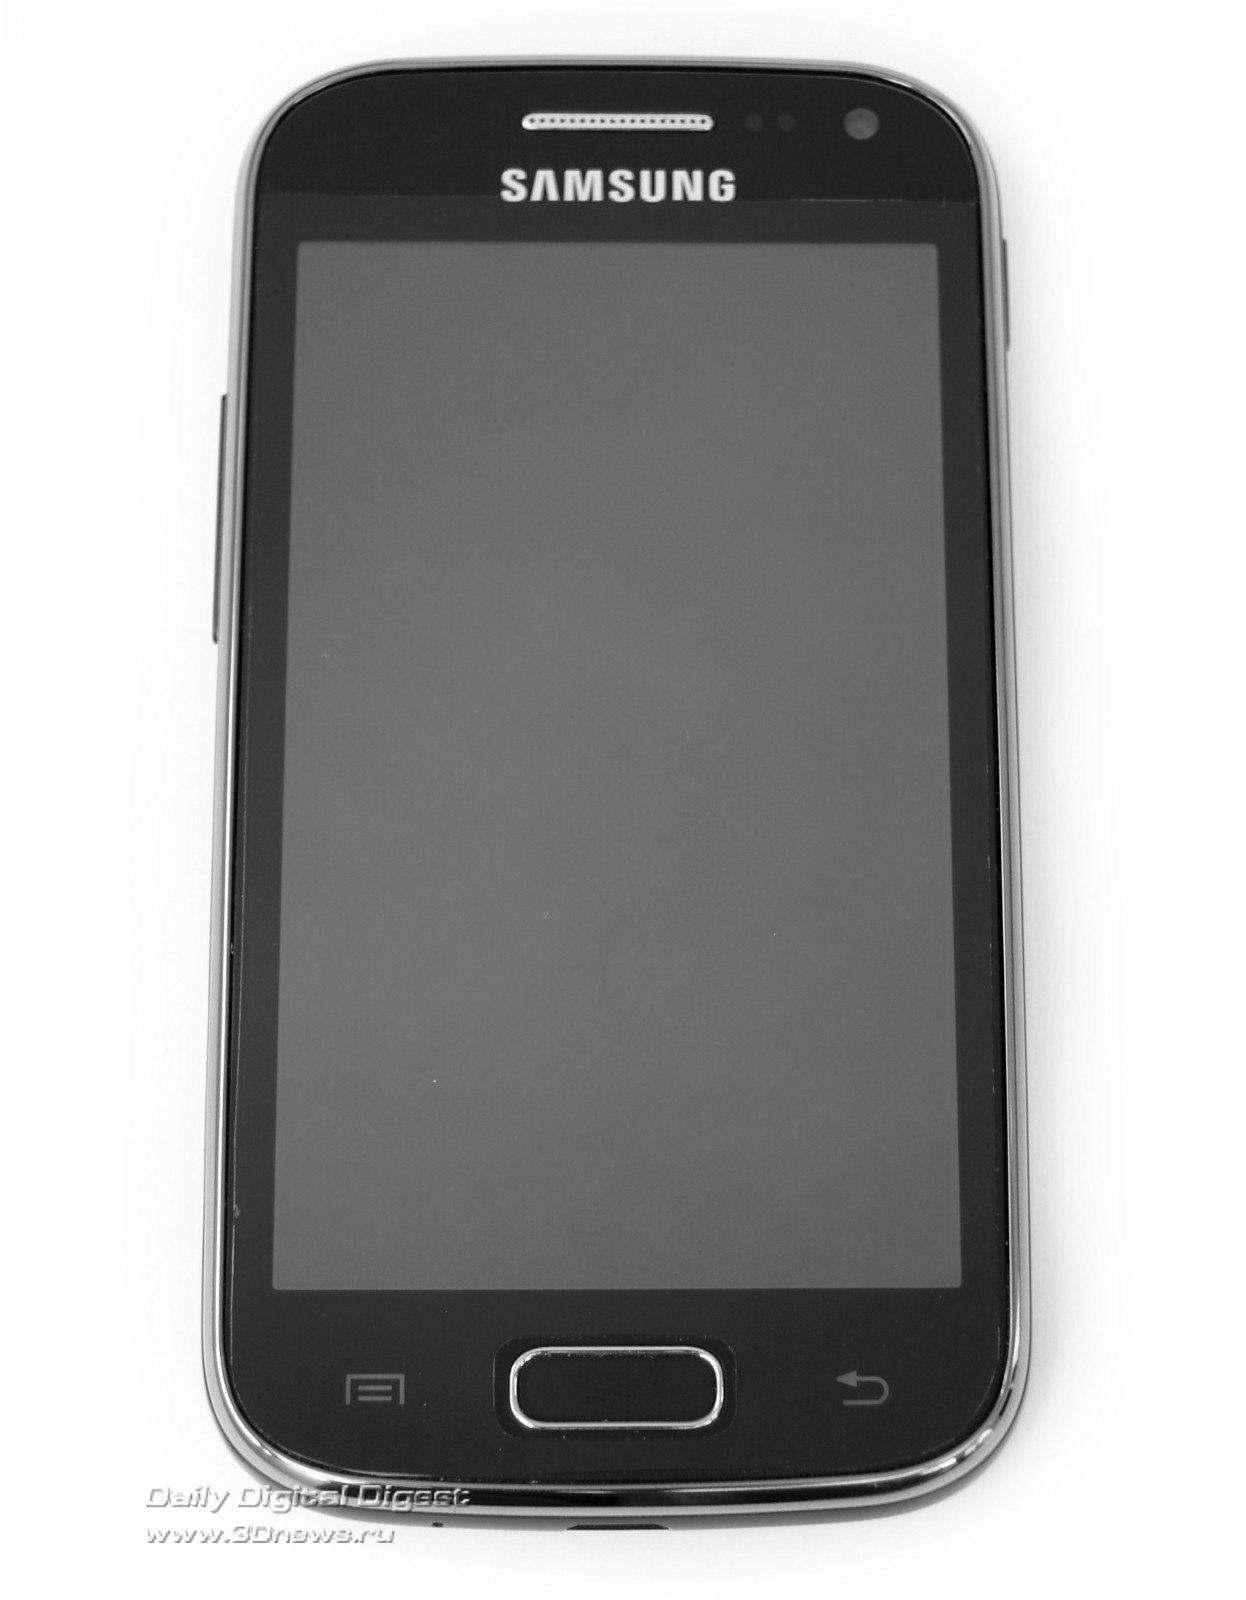 Самсунг стар экран. Samsung gt-s5320. Самсунг 1 модель сенсорный. Первый сенсорный самсунг дуос. Самсунг 5292.